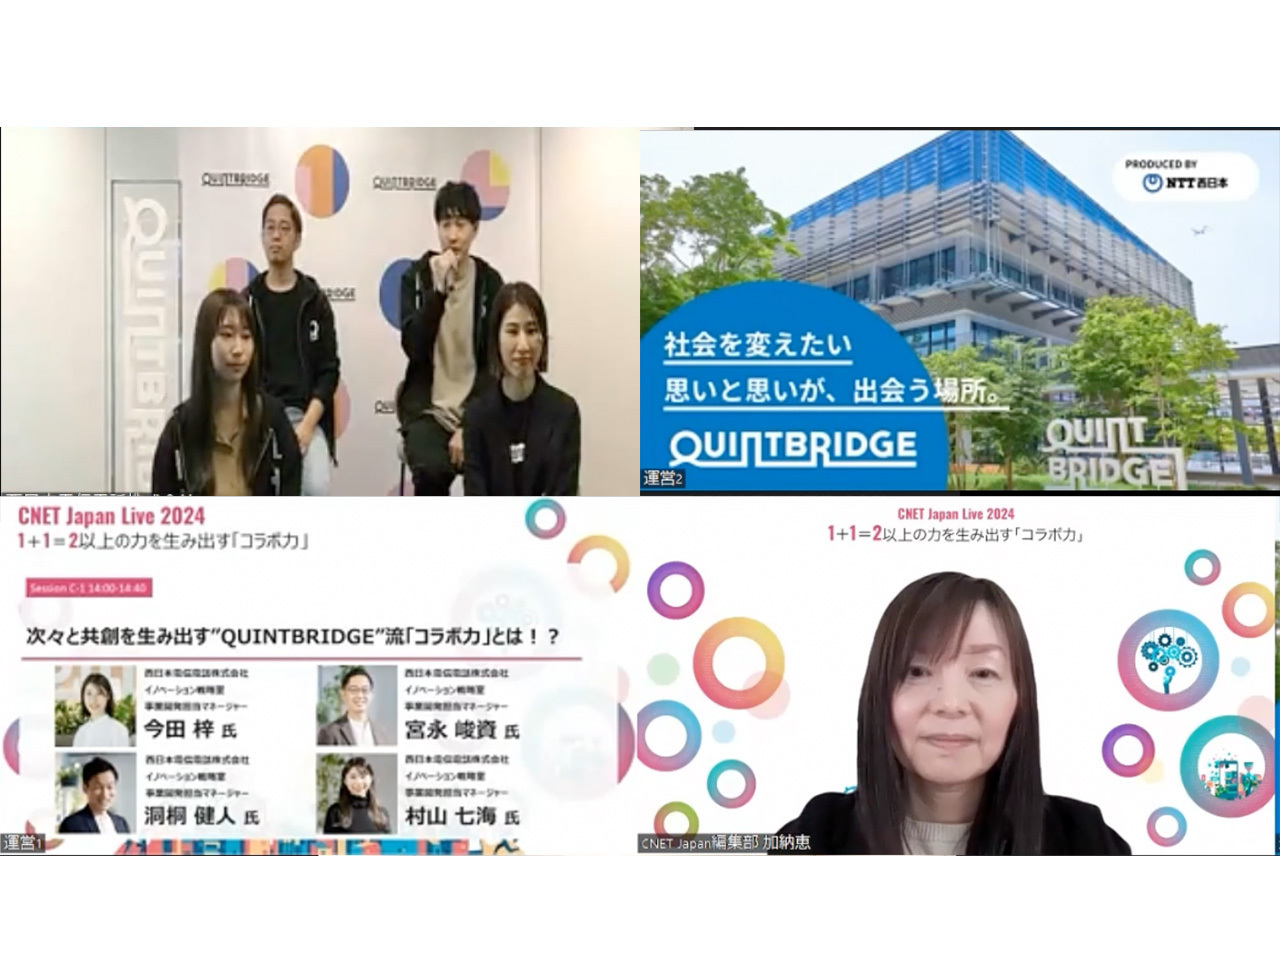 年間約400回以上の共創イベントを生み出す、NTT西日本のQUINTBRIDGE流「コラボ力」 - CNET Japan